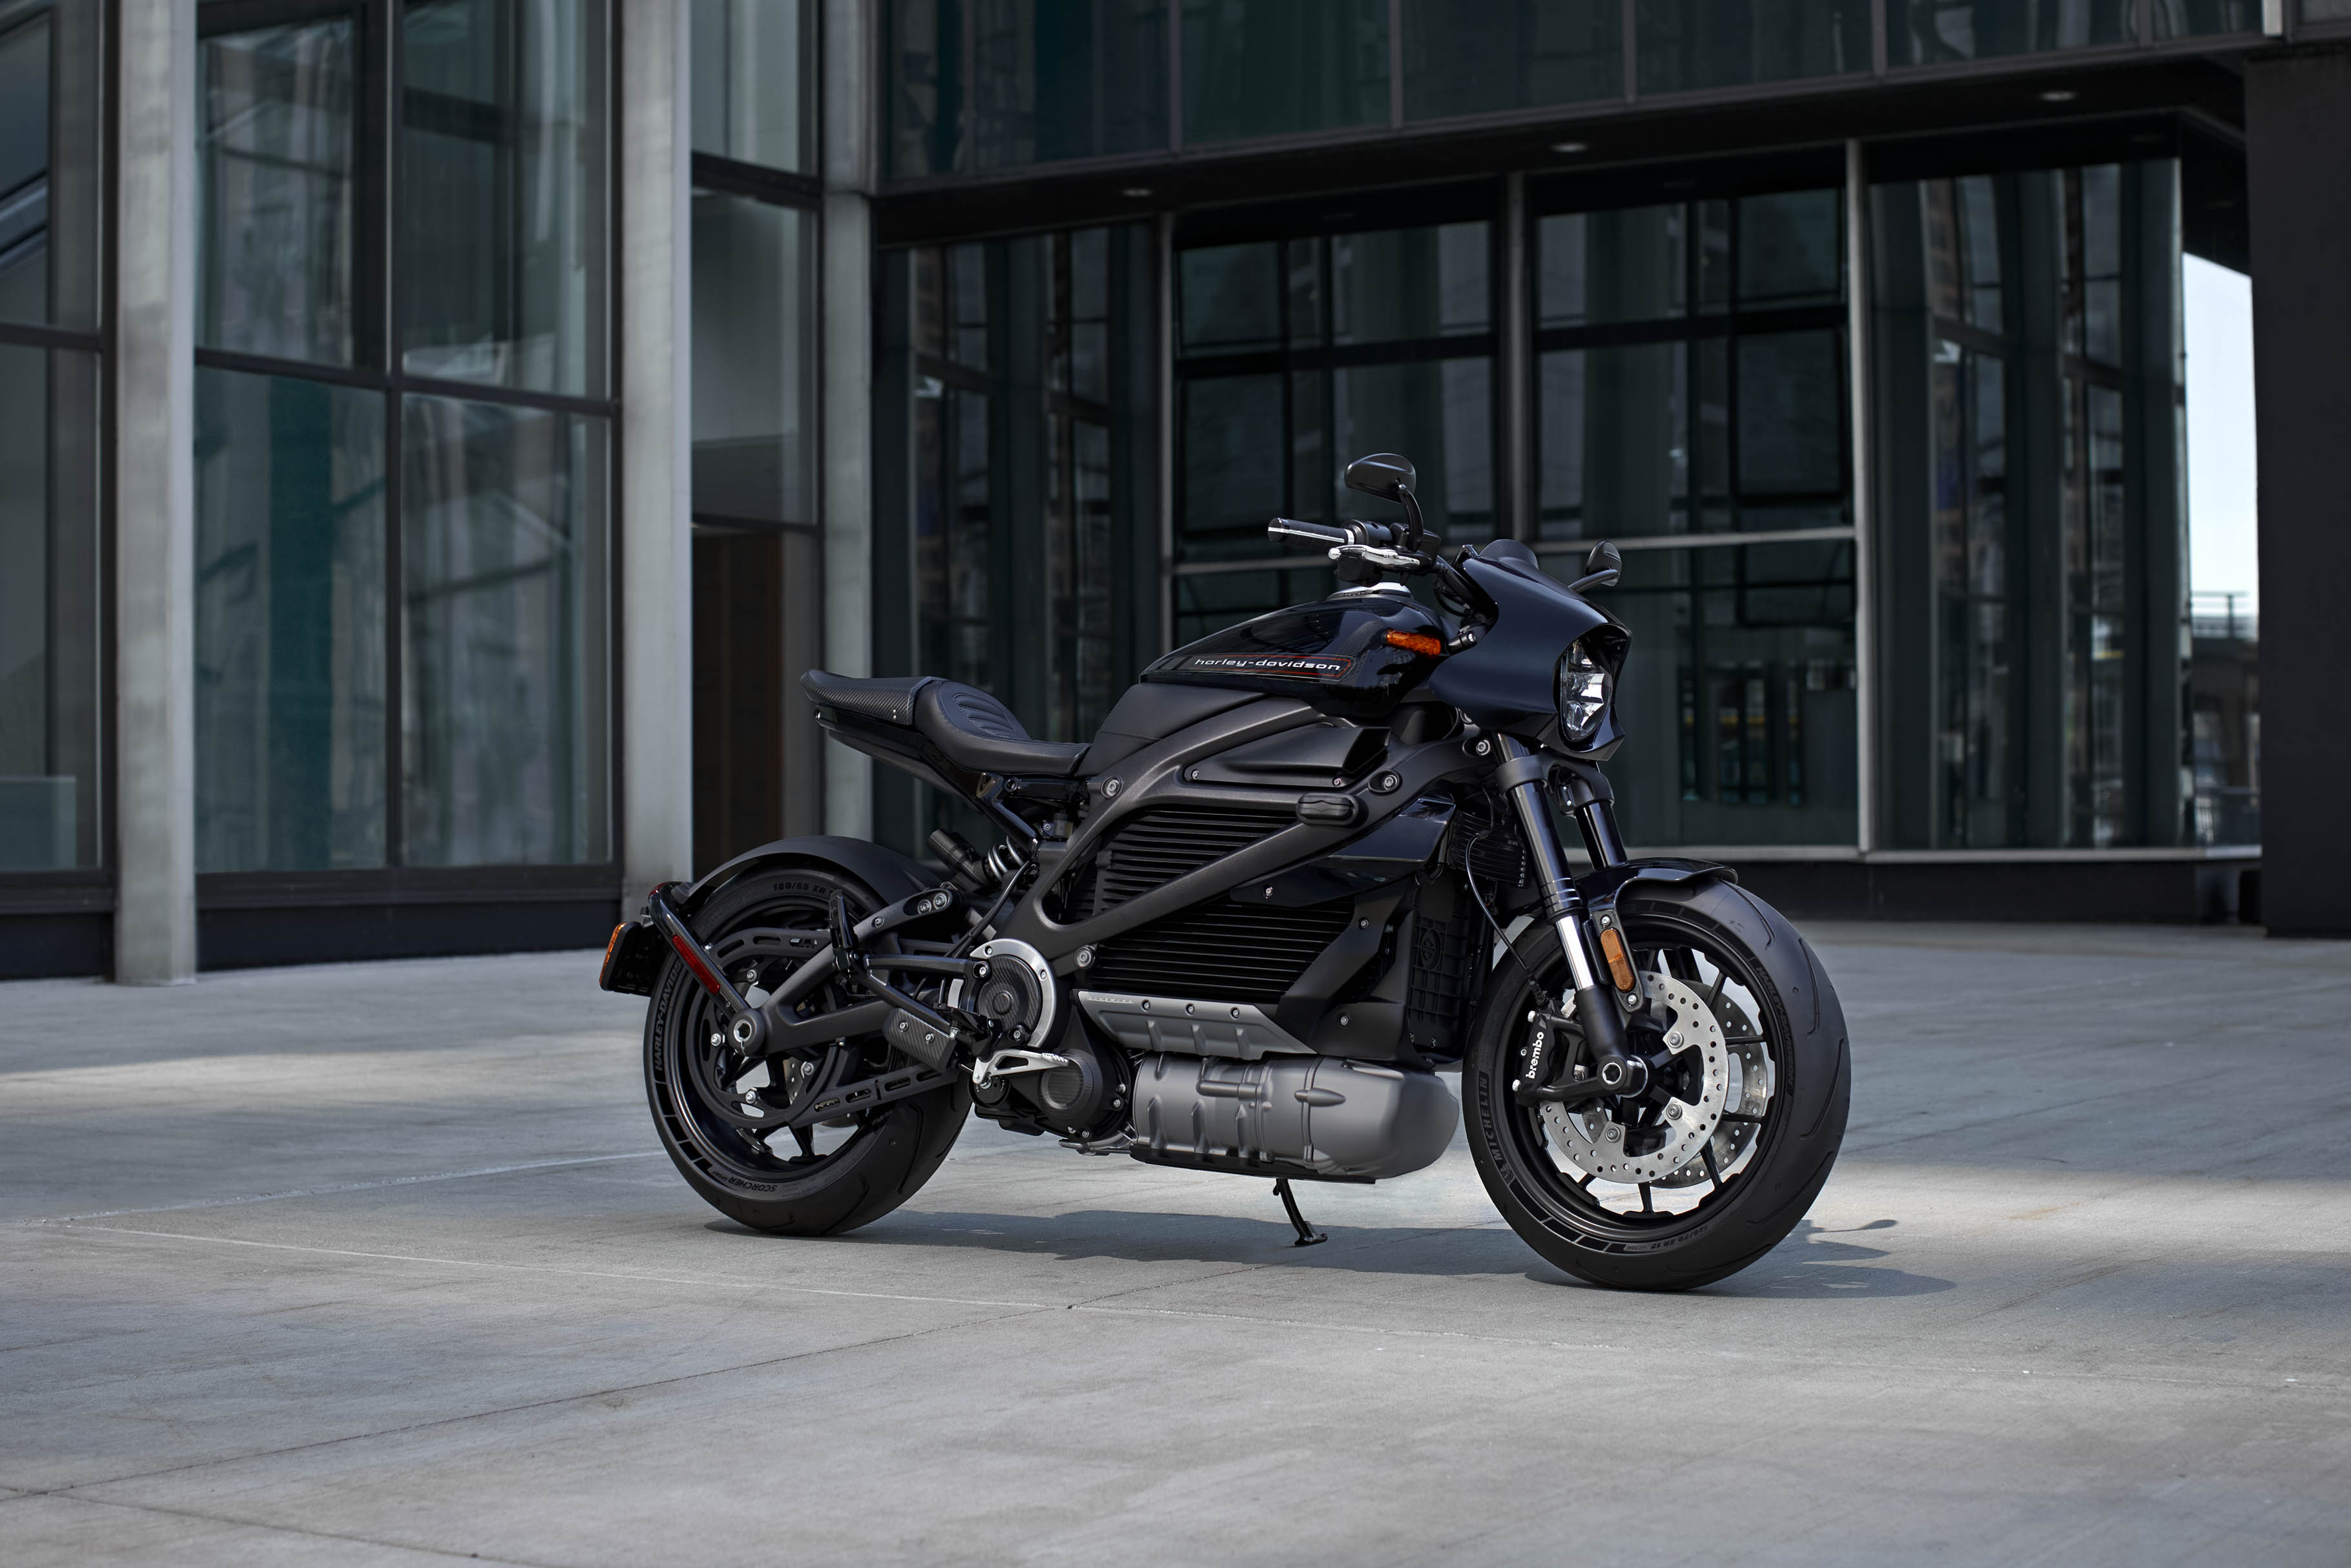 Harley Davidson’ın elektrikli motosikletiyle ilgili yeni gelişmeler